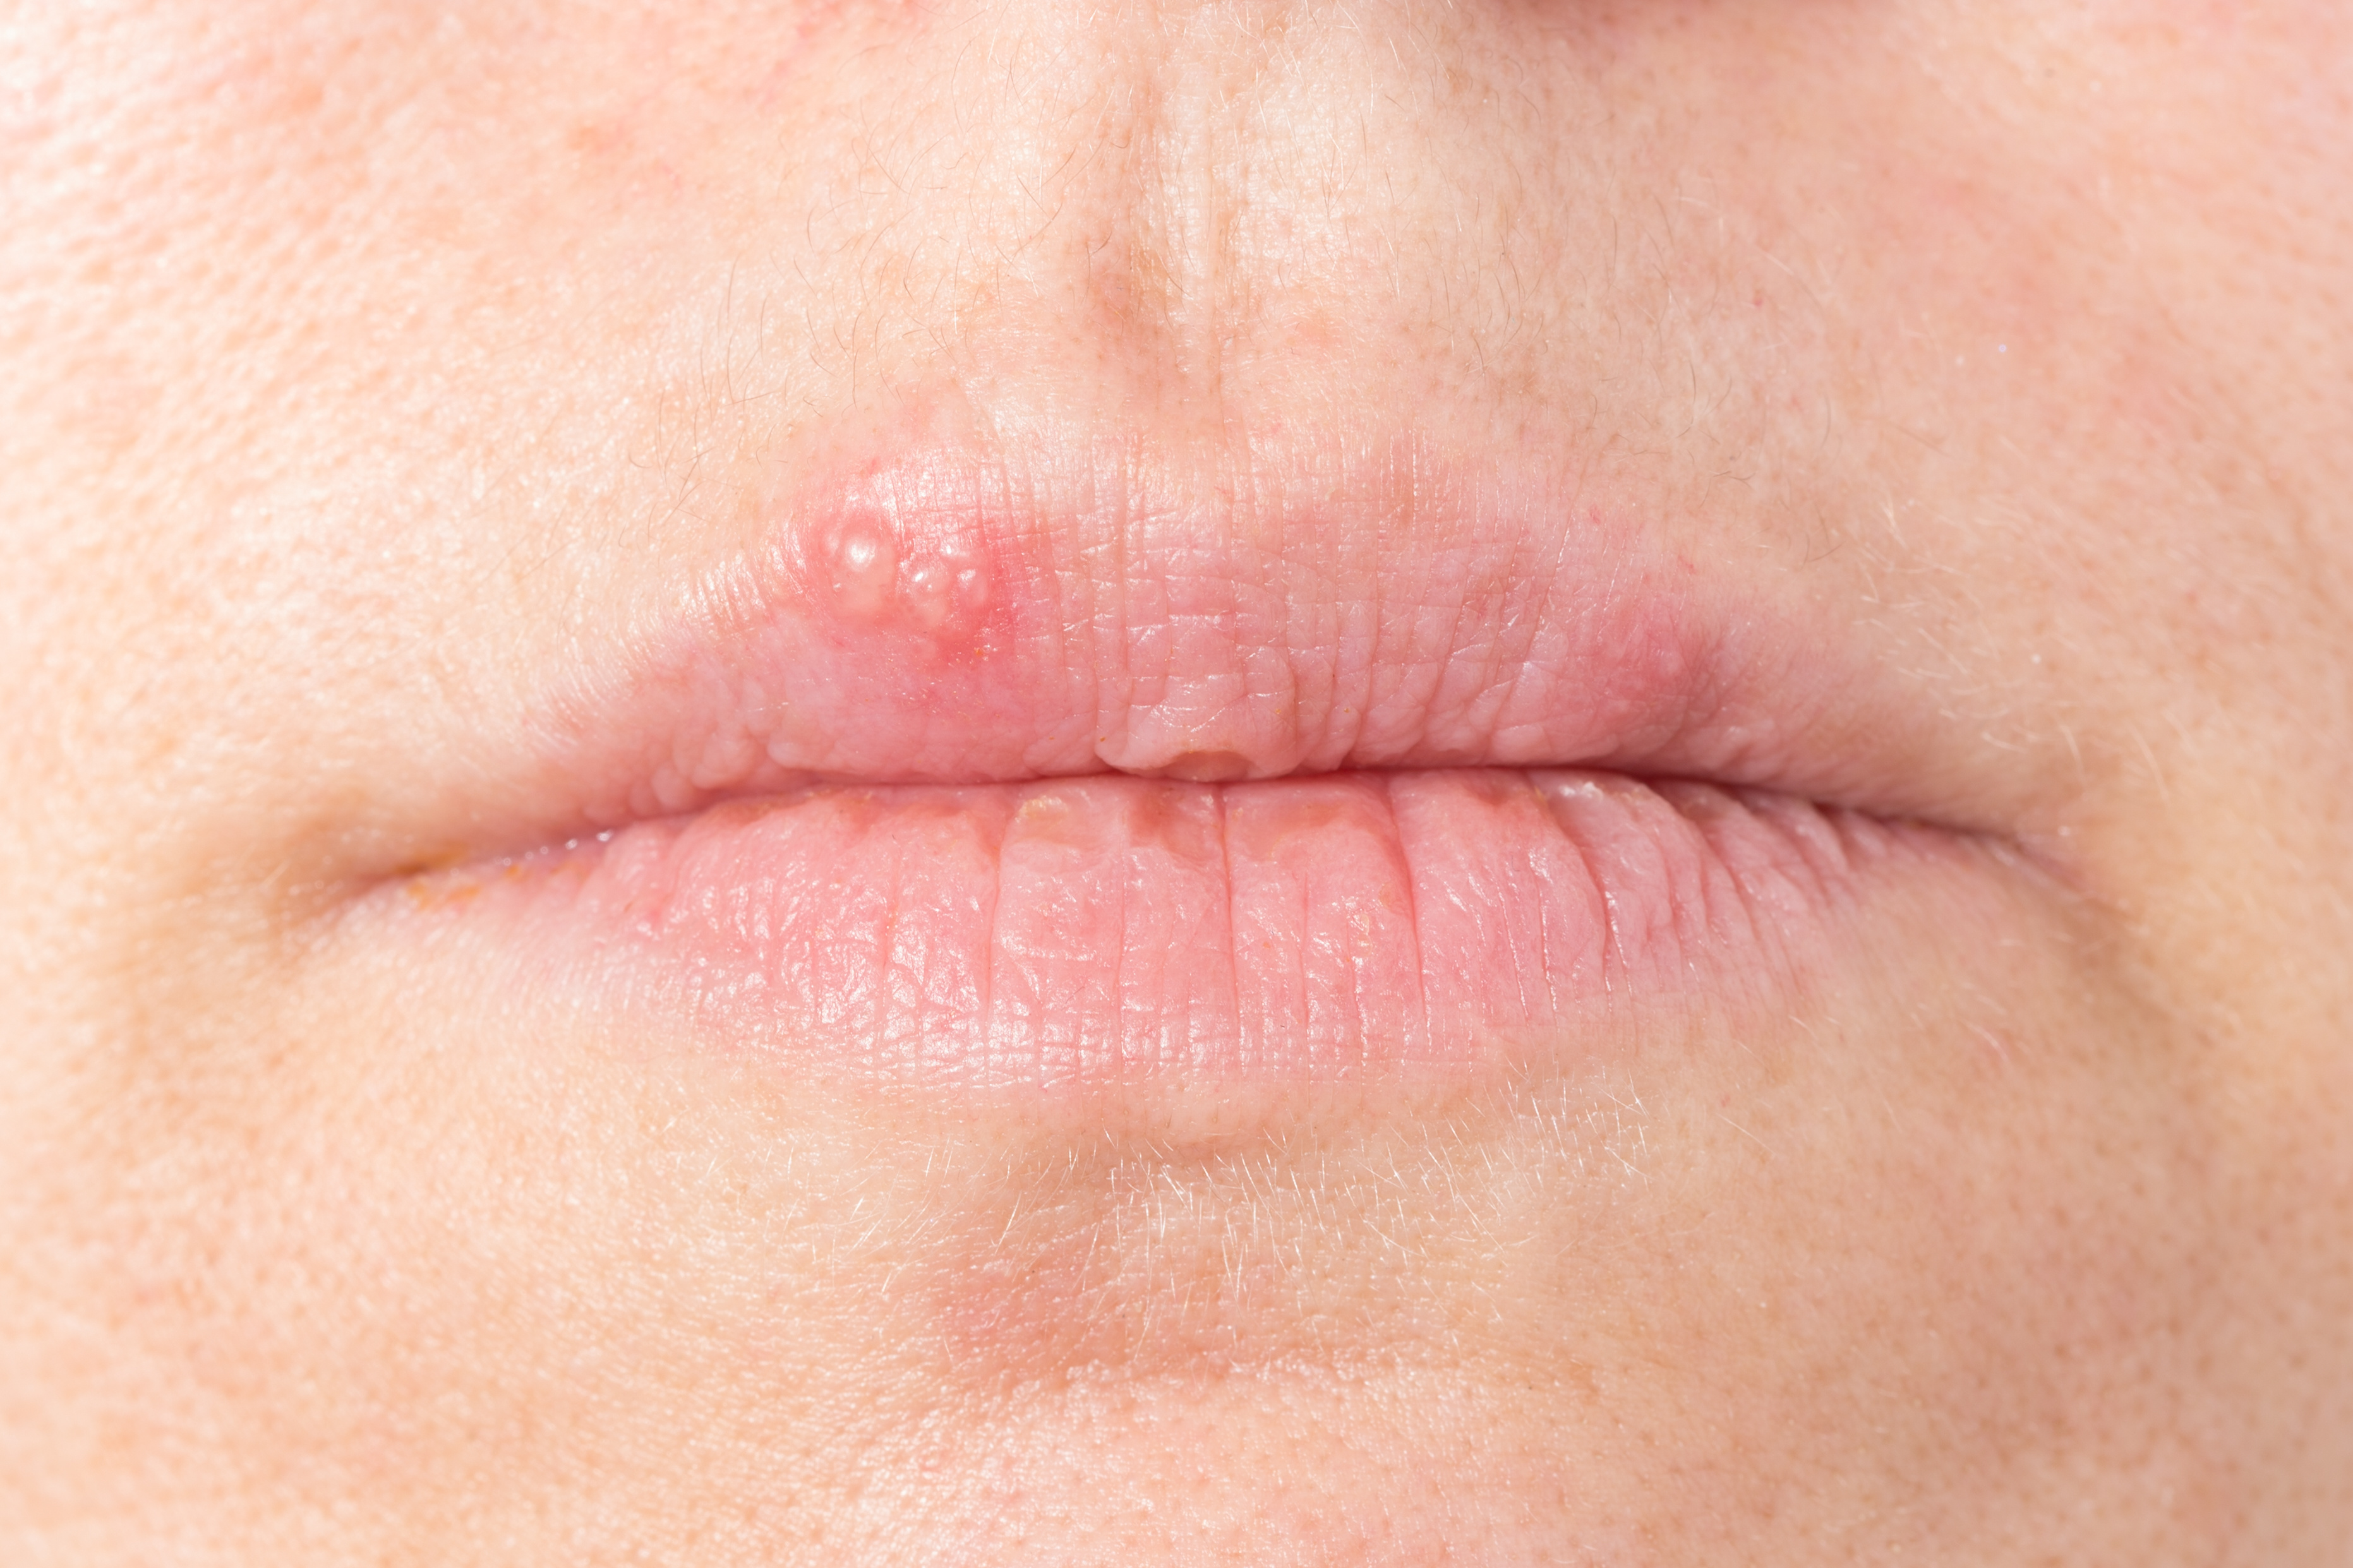 hausmittel-bei-lippenbl-schen-lippenherpes-heilpraxis